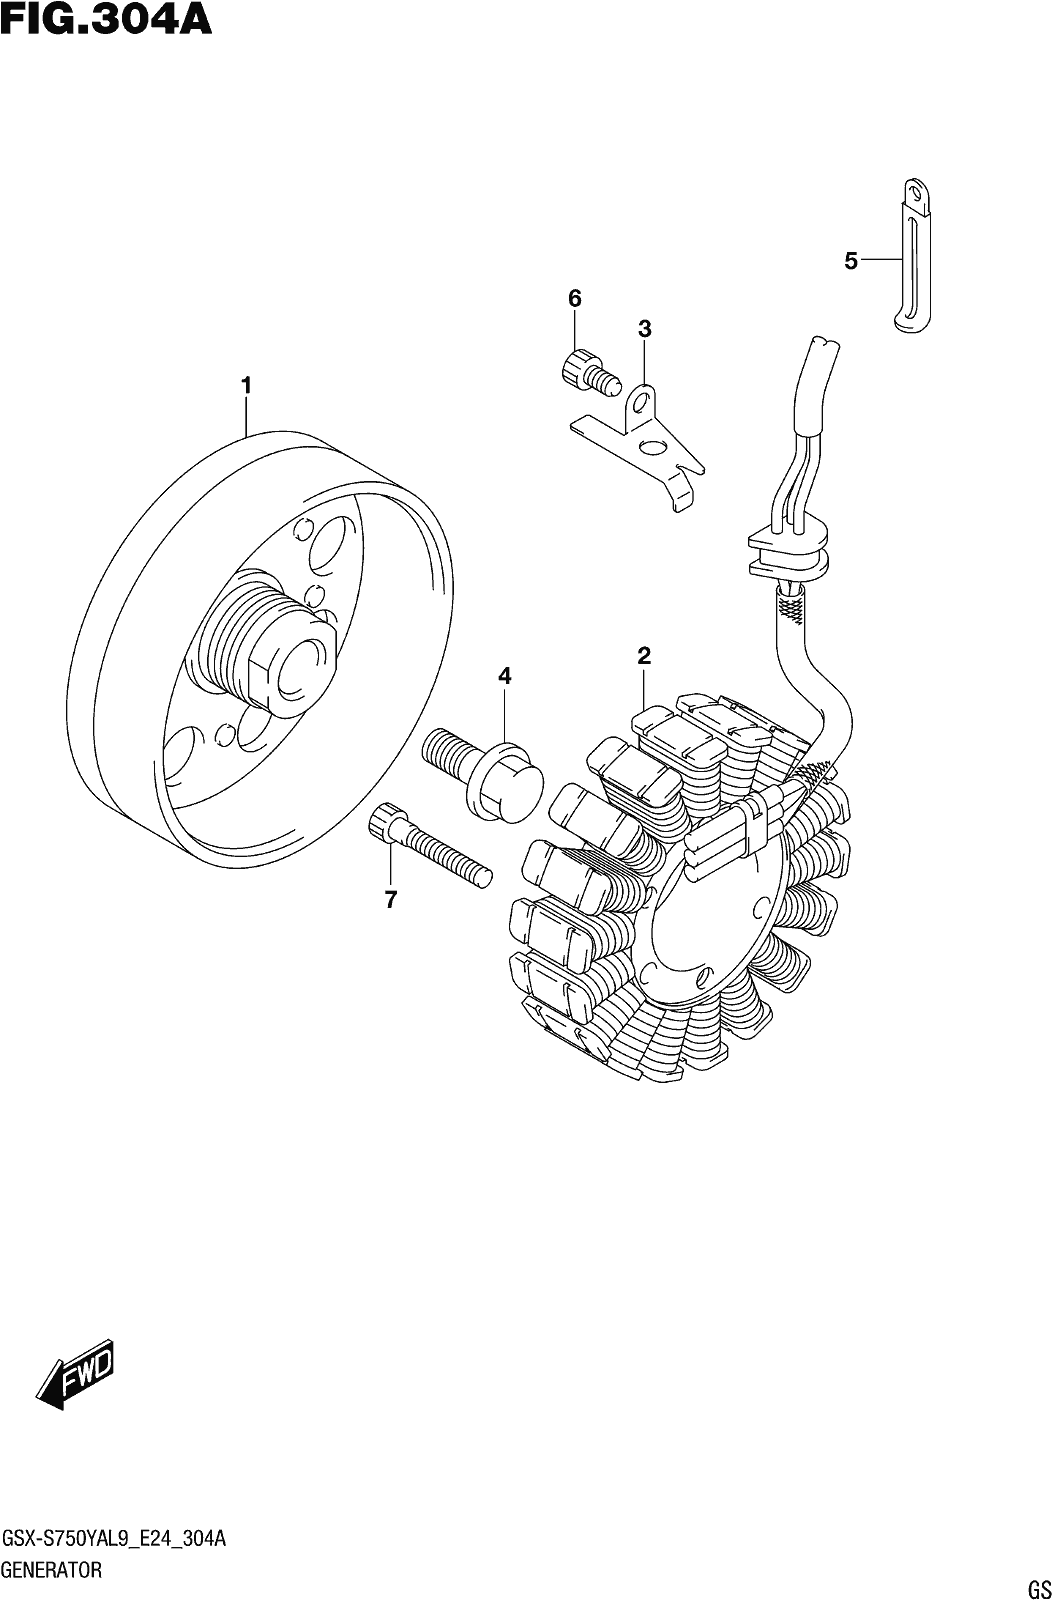 Fig.304a Generator